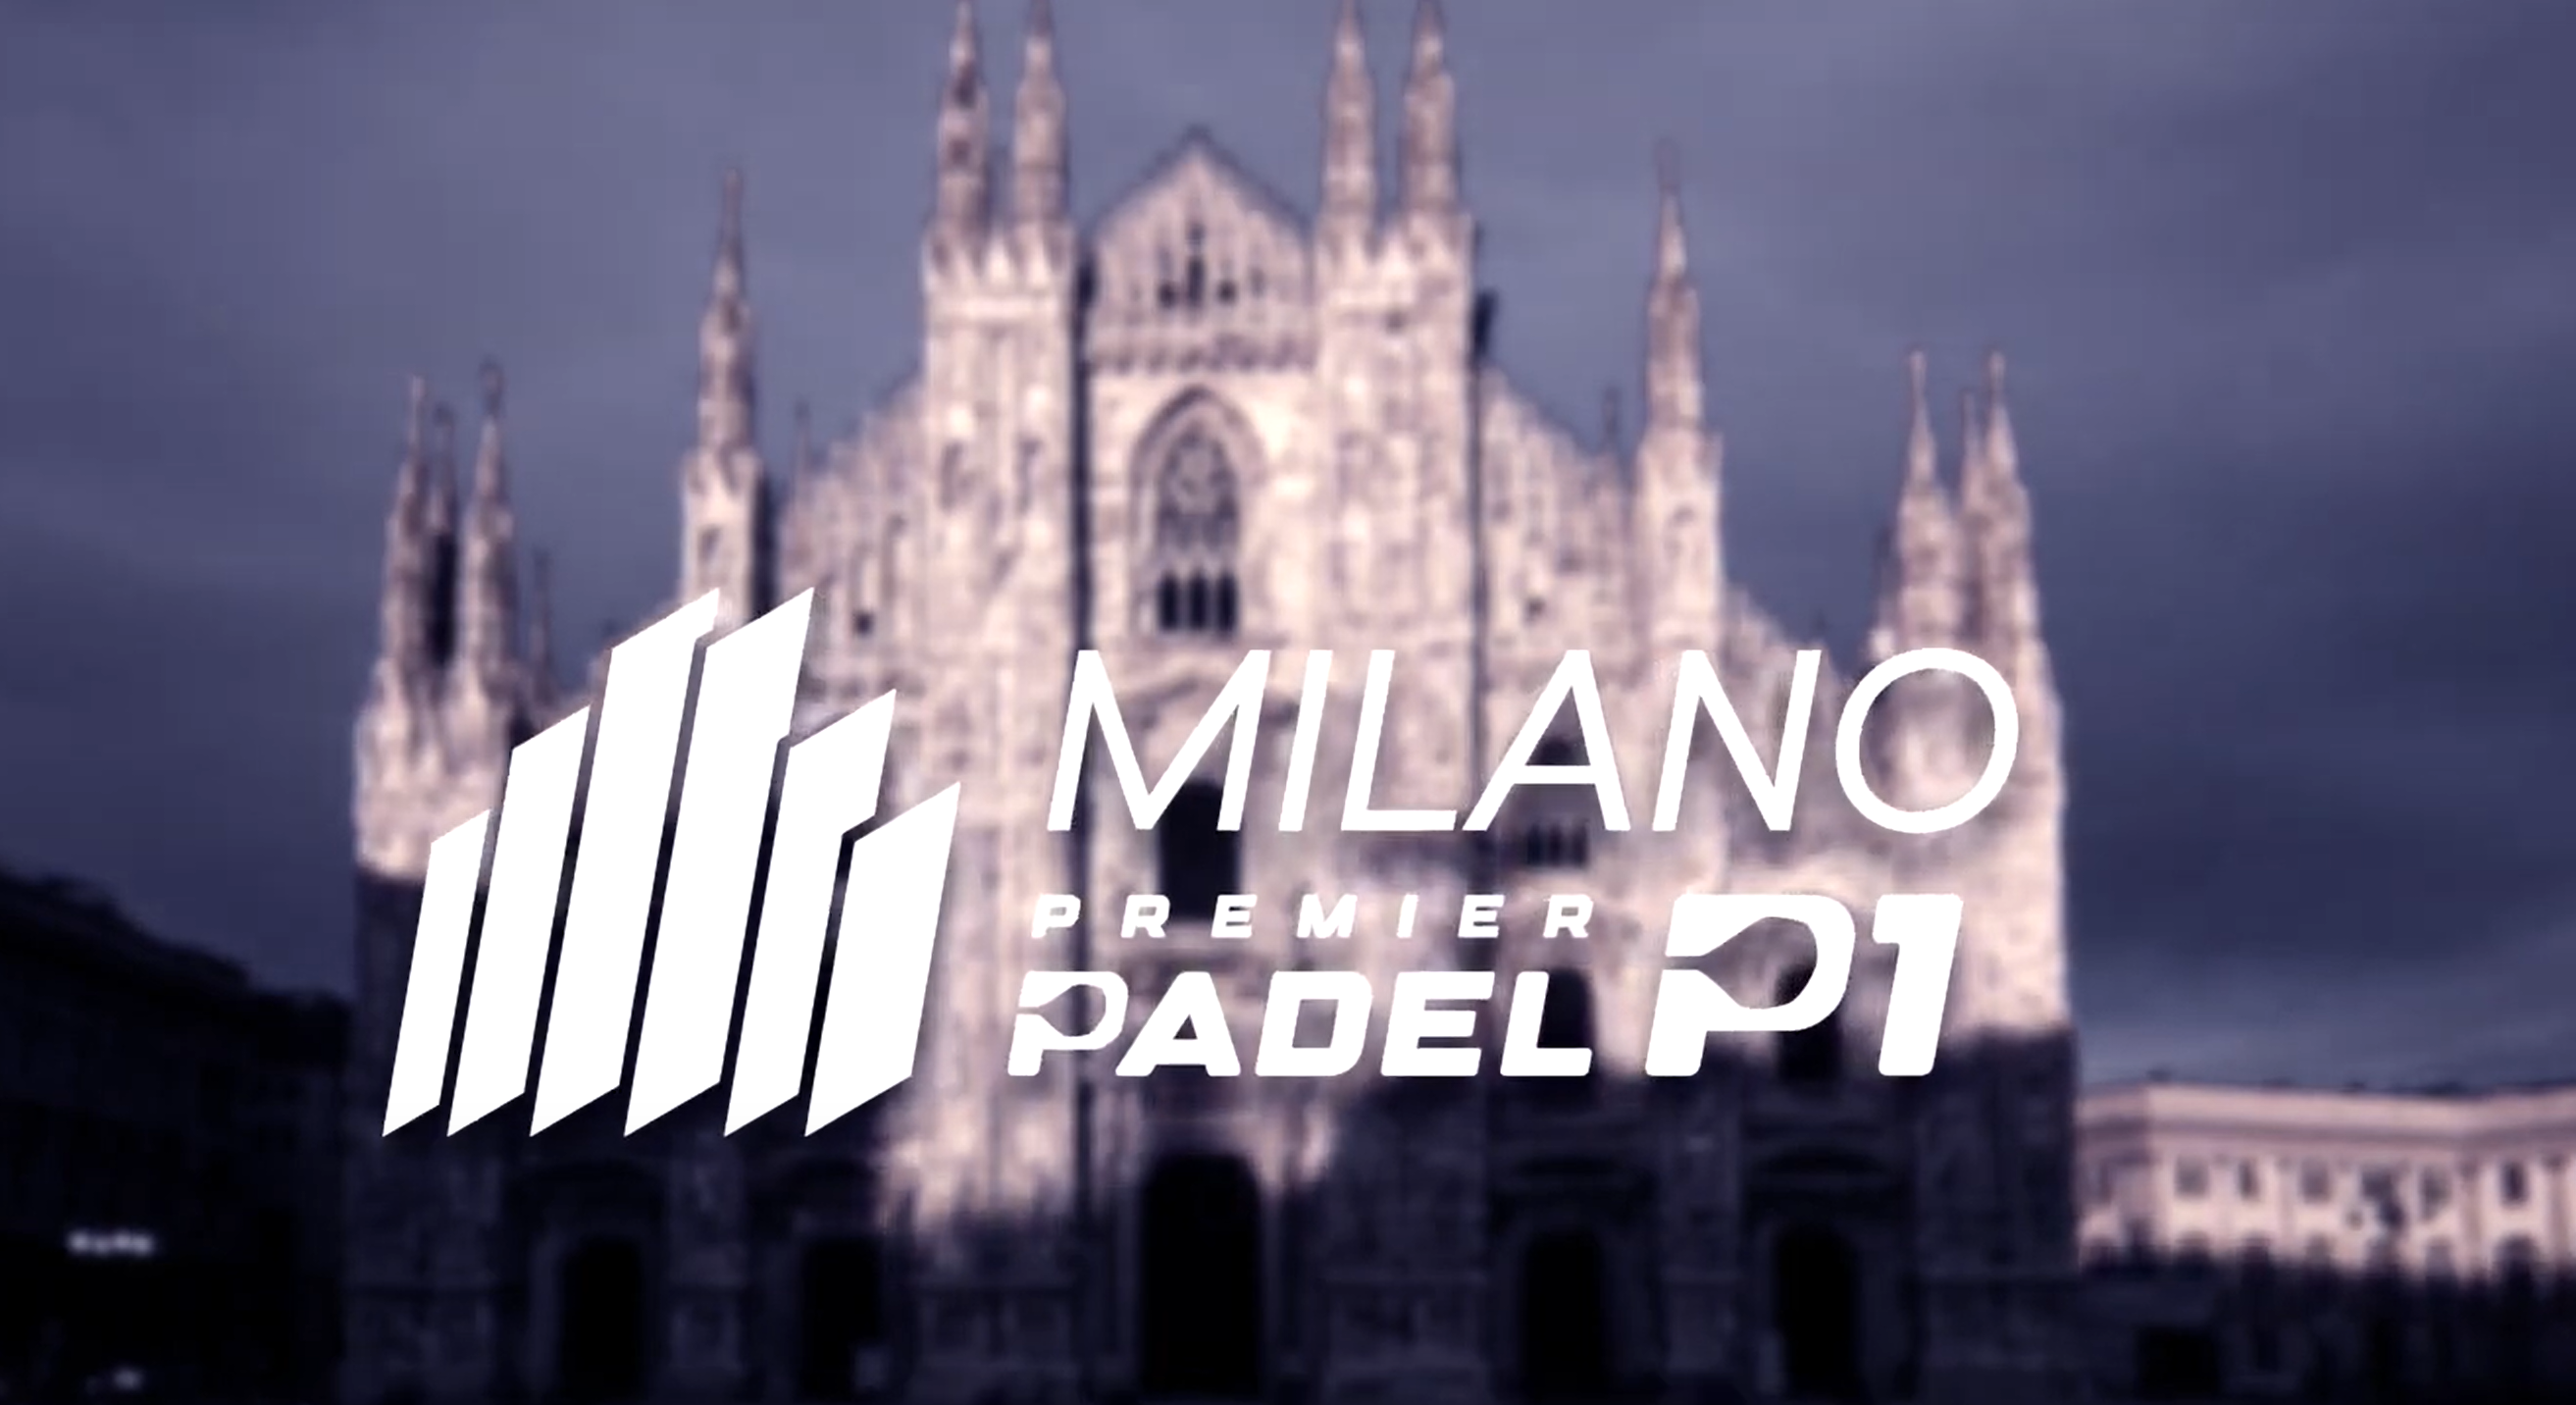 Milano er vært for en Premier Padel P1 fra 5. til 11. december 2022